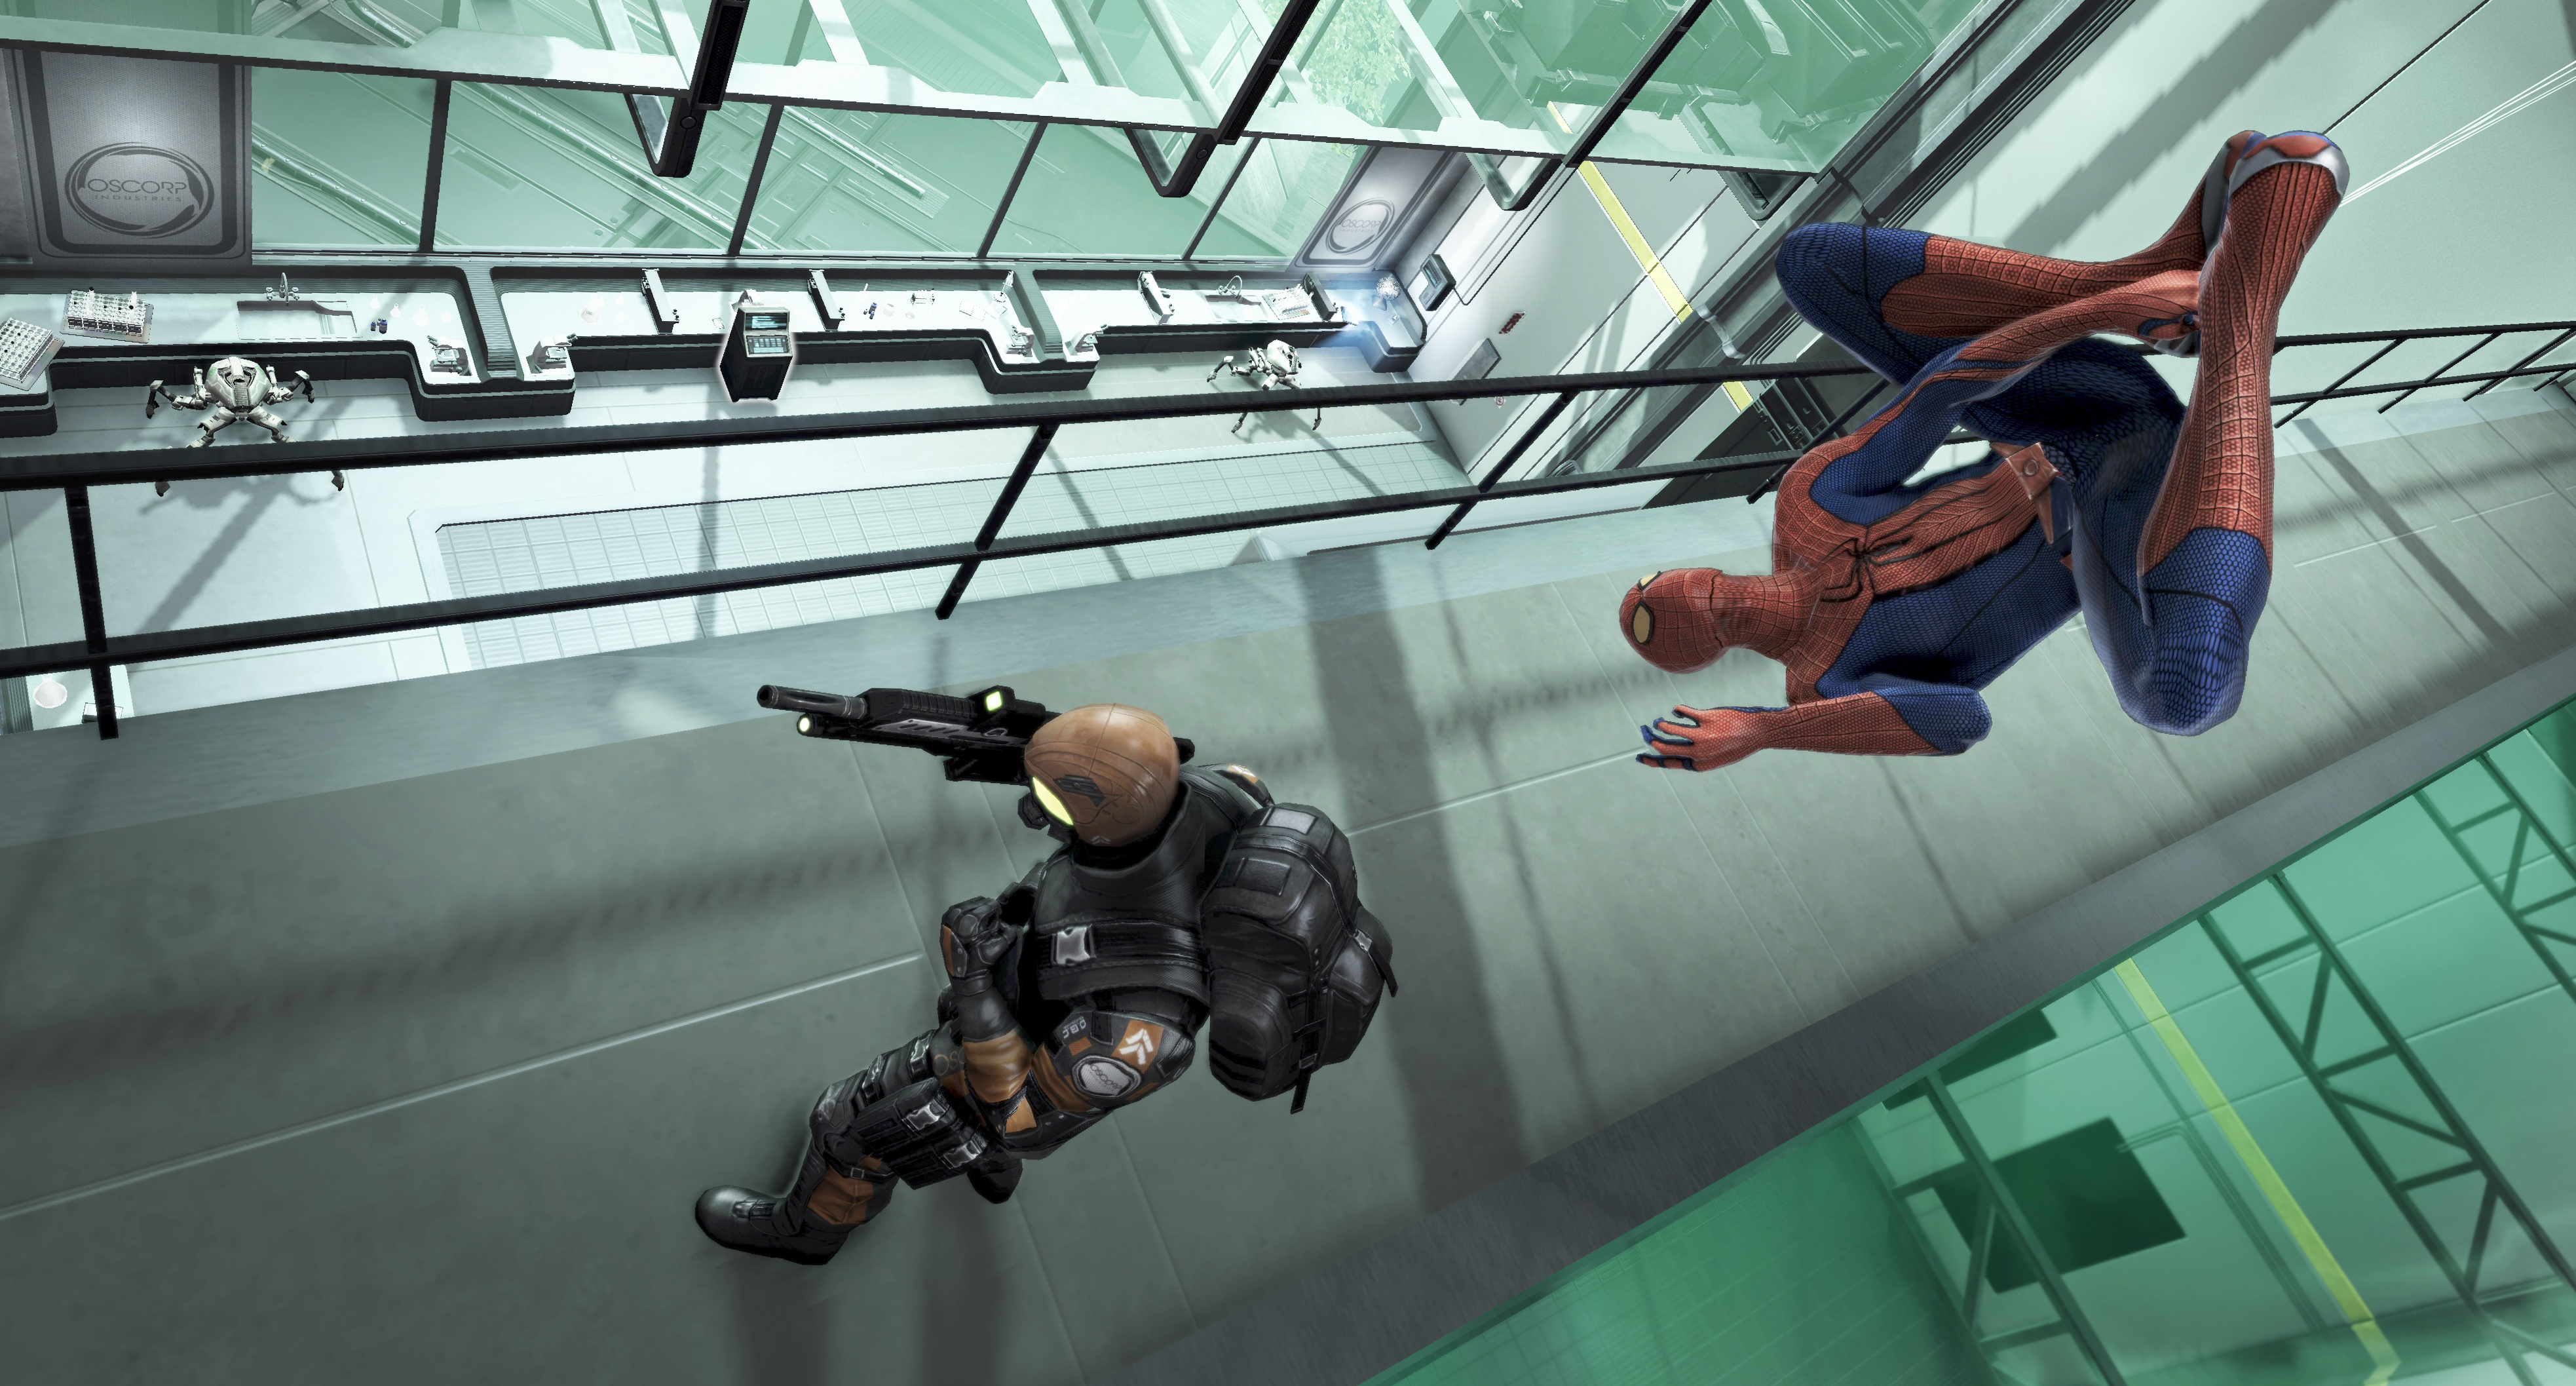 Игру новый человек паук 1. The amazing Spider-man игра. The amazing Spider-man 1 игра. Новый человек паук игра 2012. Человек паук игра 2012.